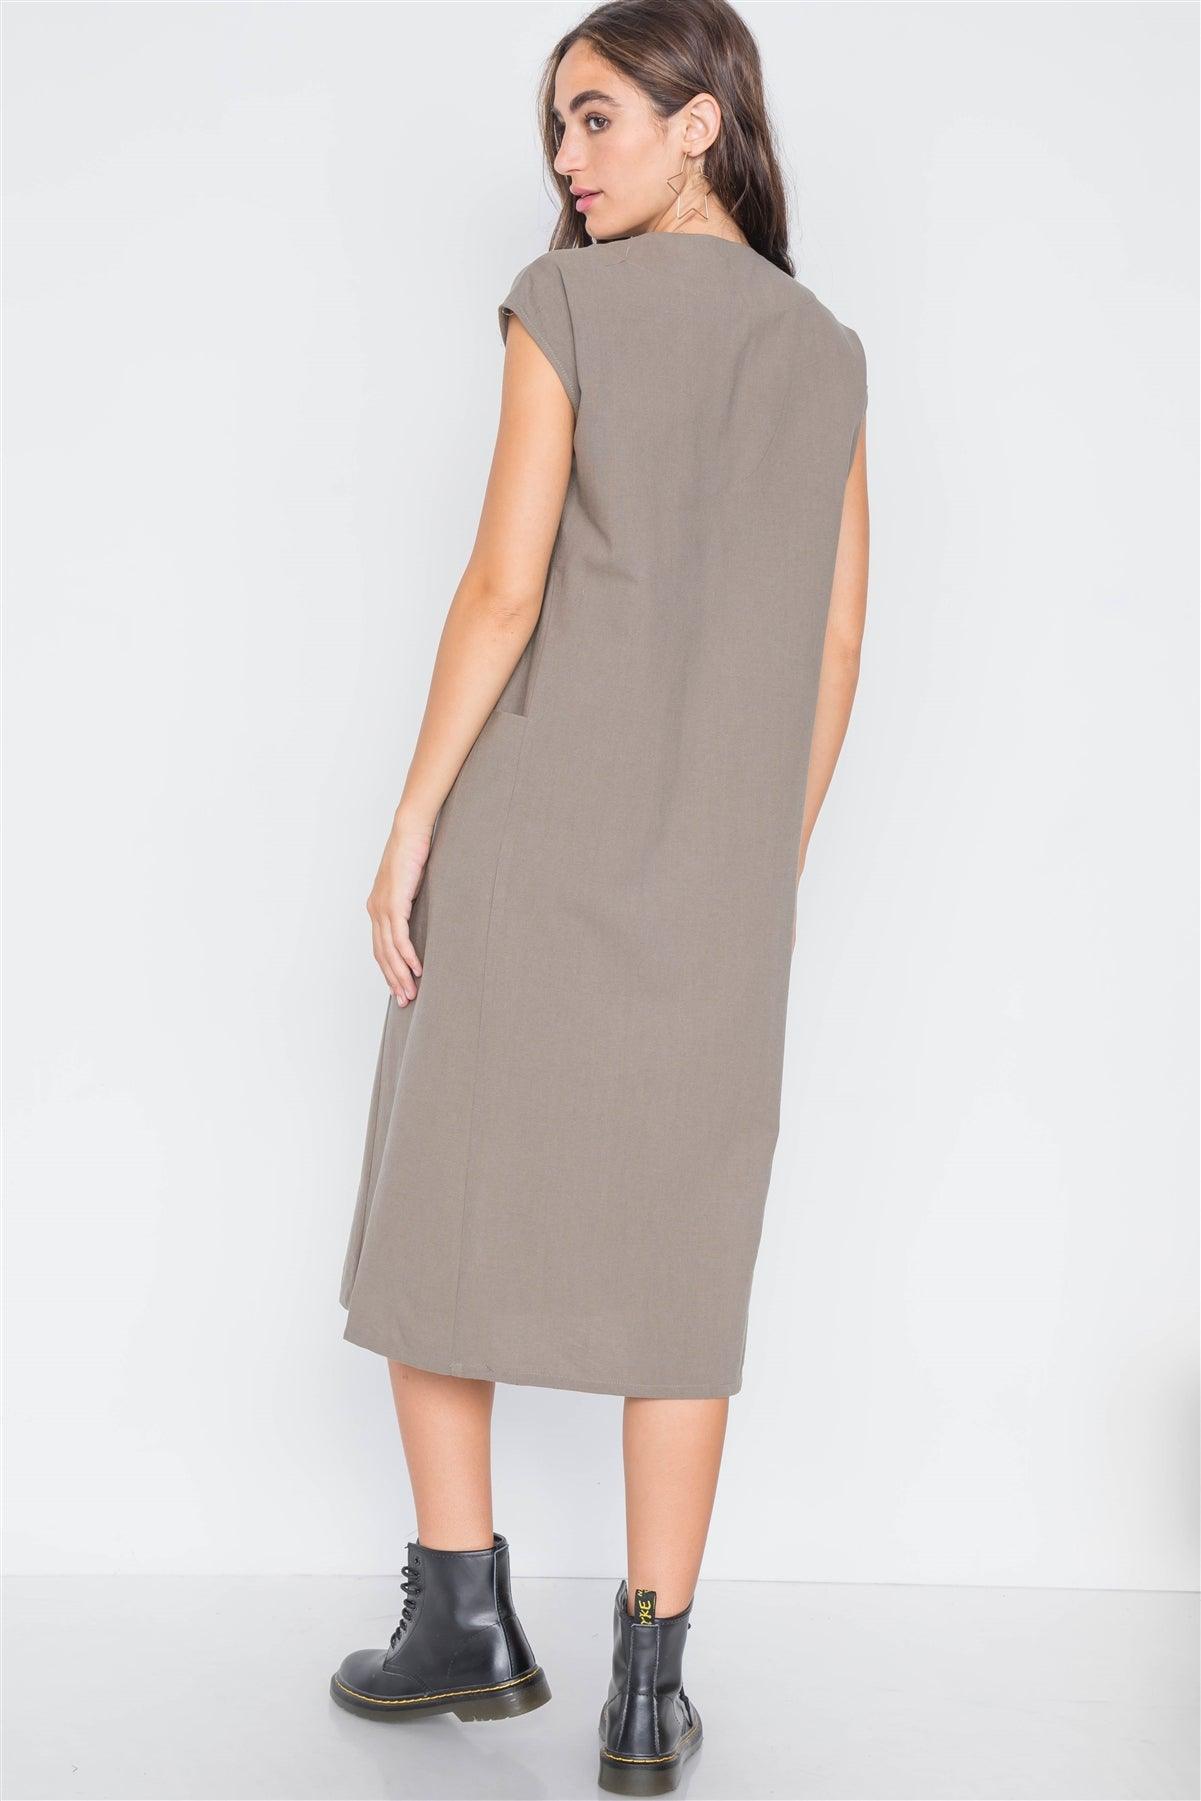 Field Grey Button Down Sleeveless Dress /3-2-1